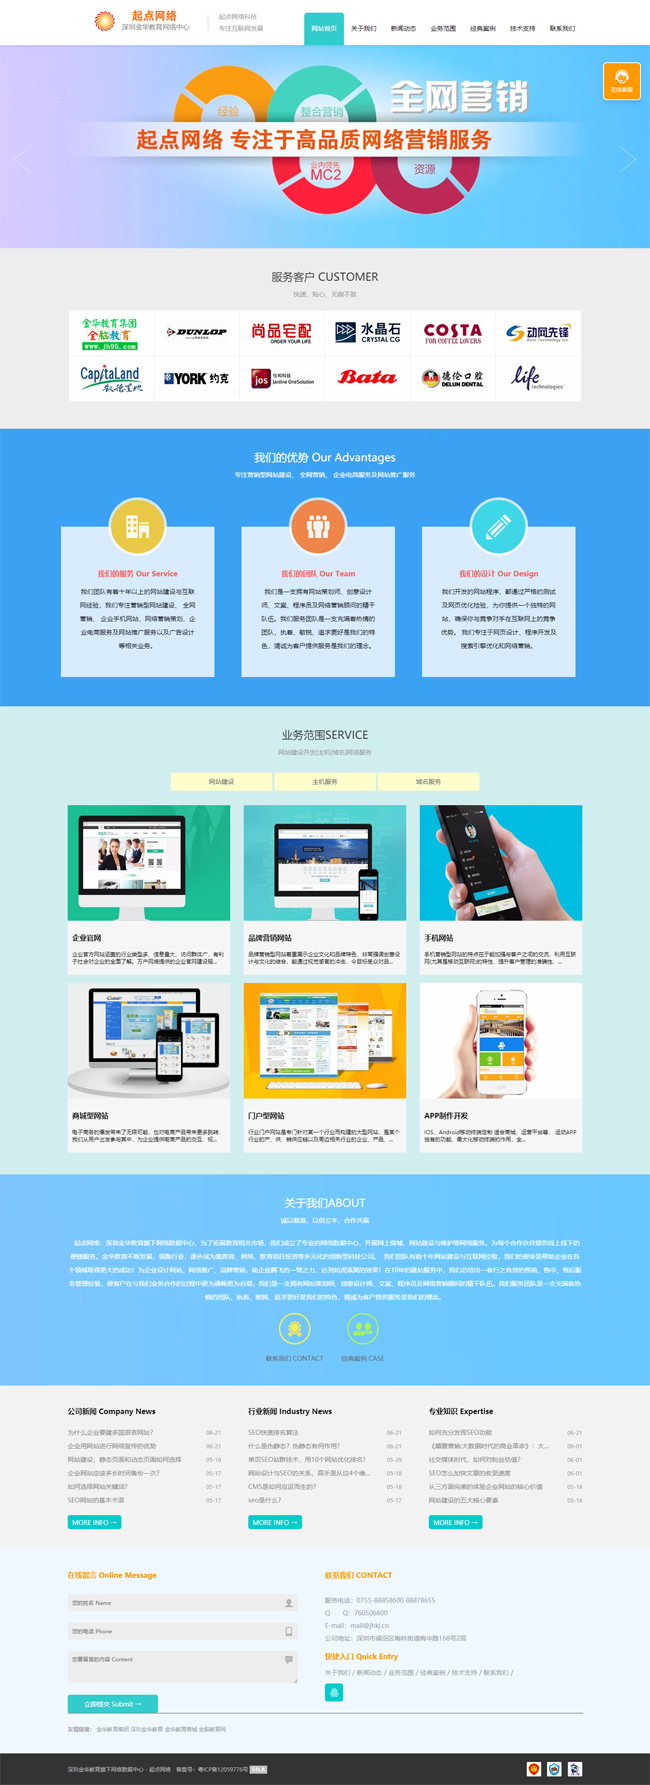 深圳金华教育网络数据中心起点科技新版网站上线(图1)